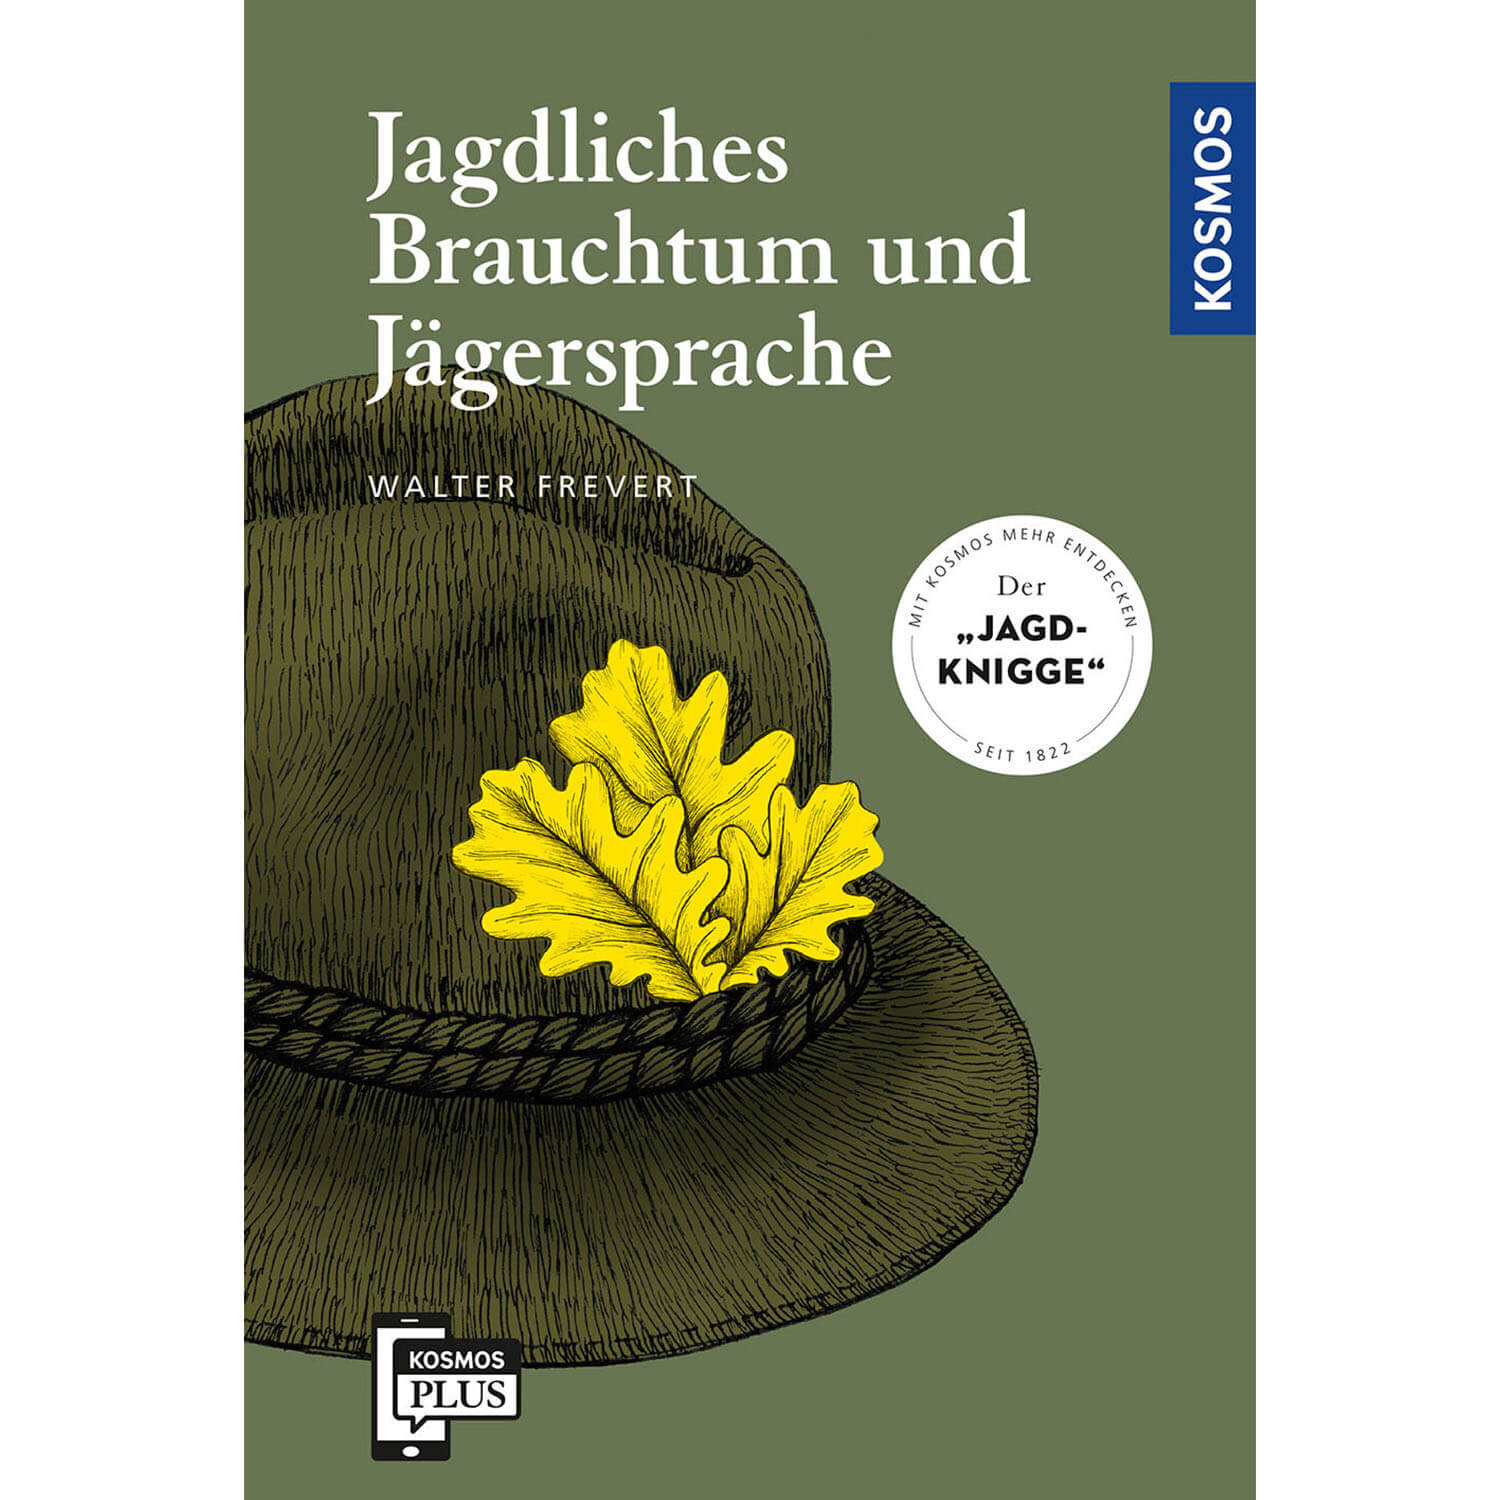 Jagdliches Brauchtum und Jägersprache - Buch- Walter Frevert - Jagdausrüstung